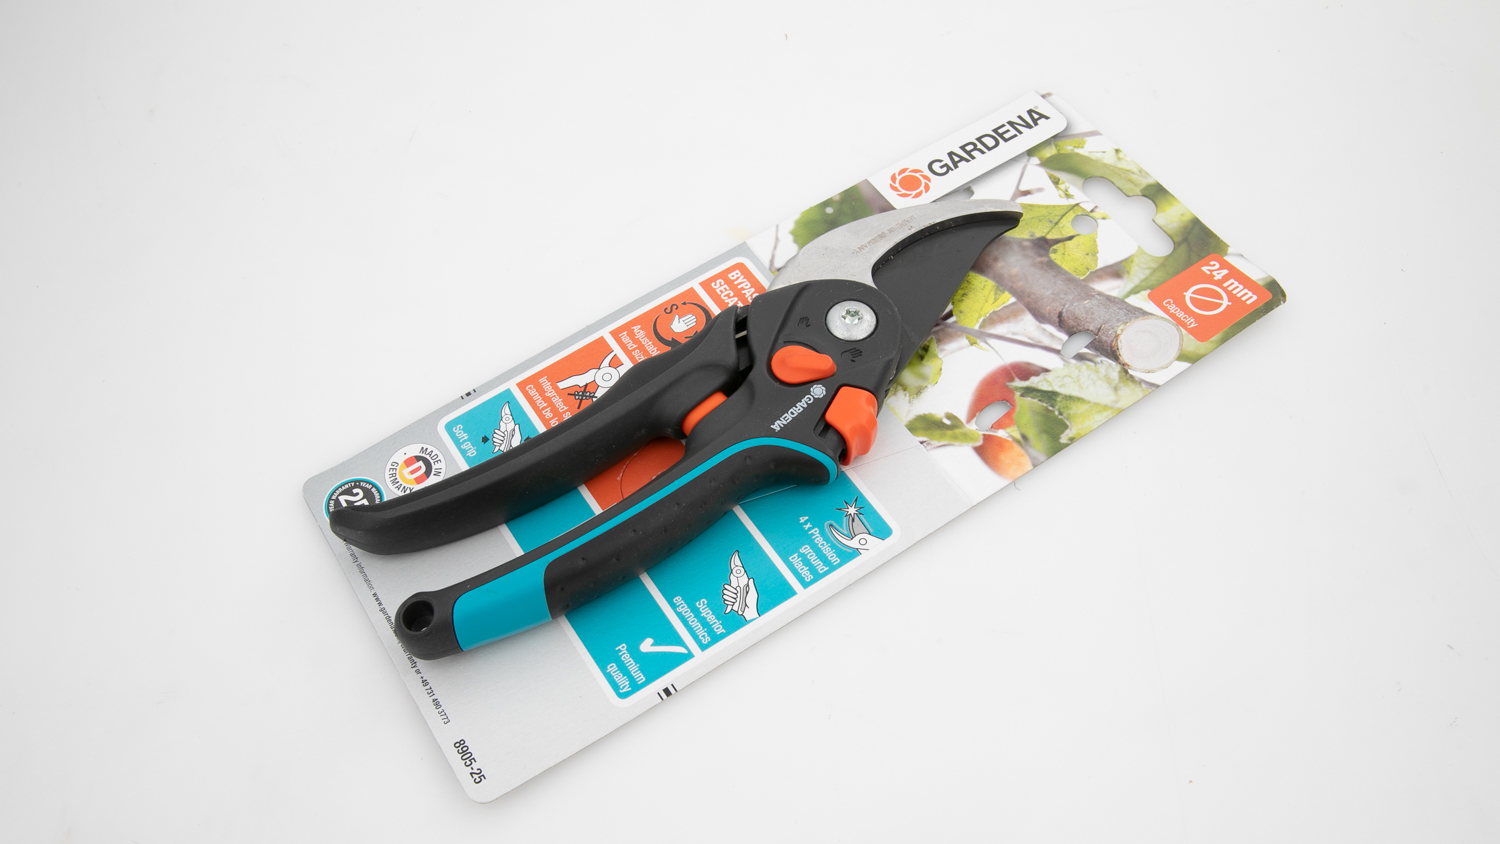 Gardena Premium Secateurs review - Pruning - Tools